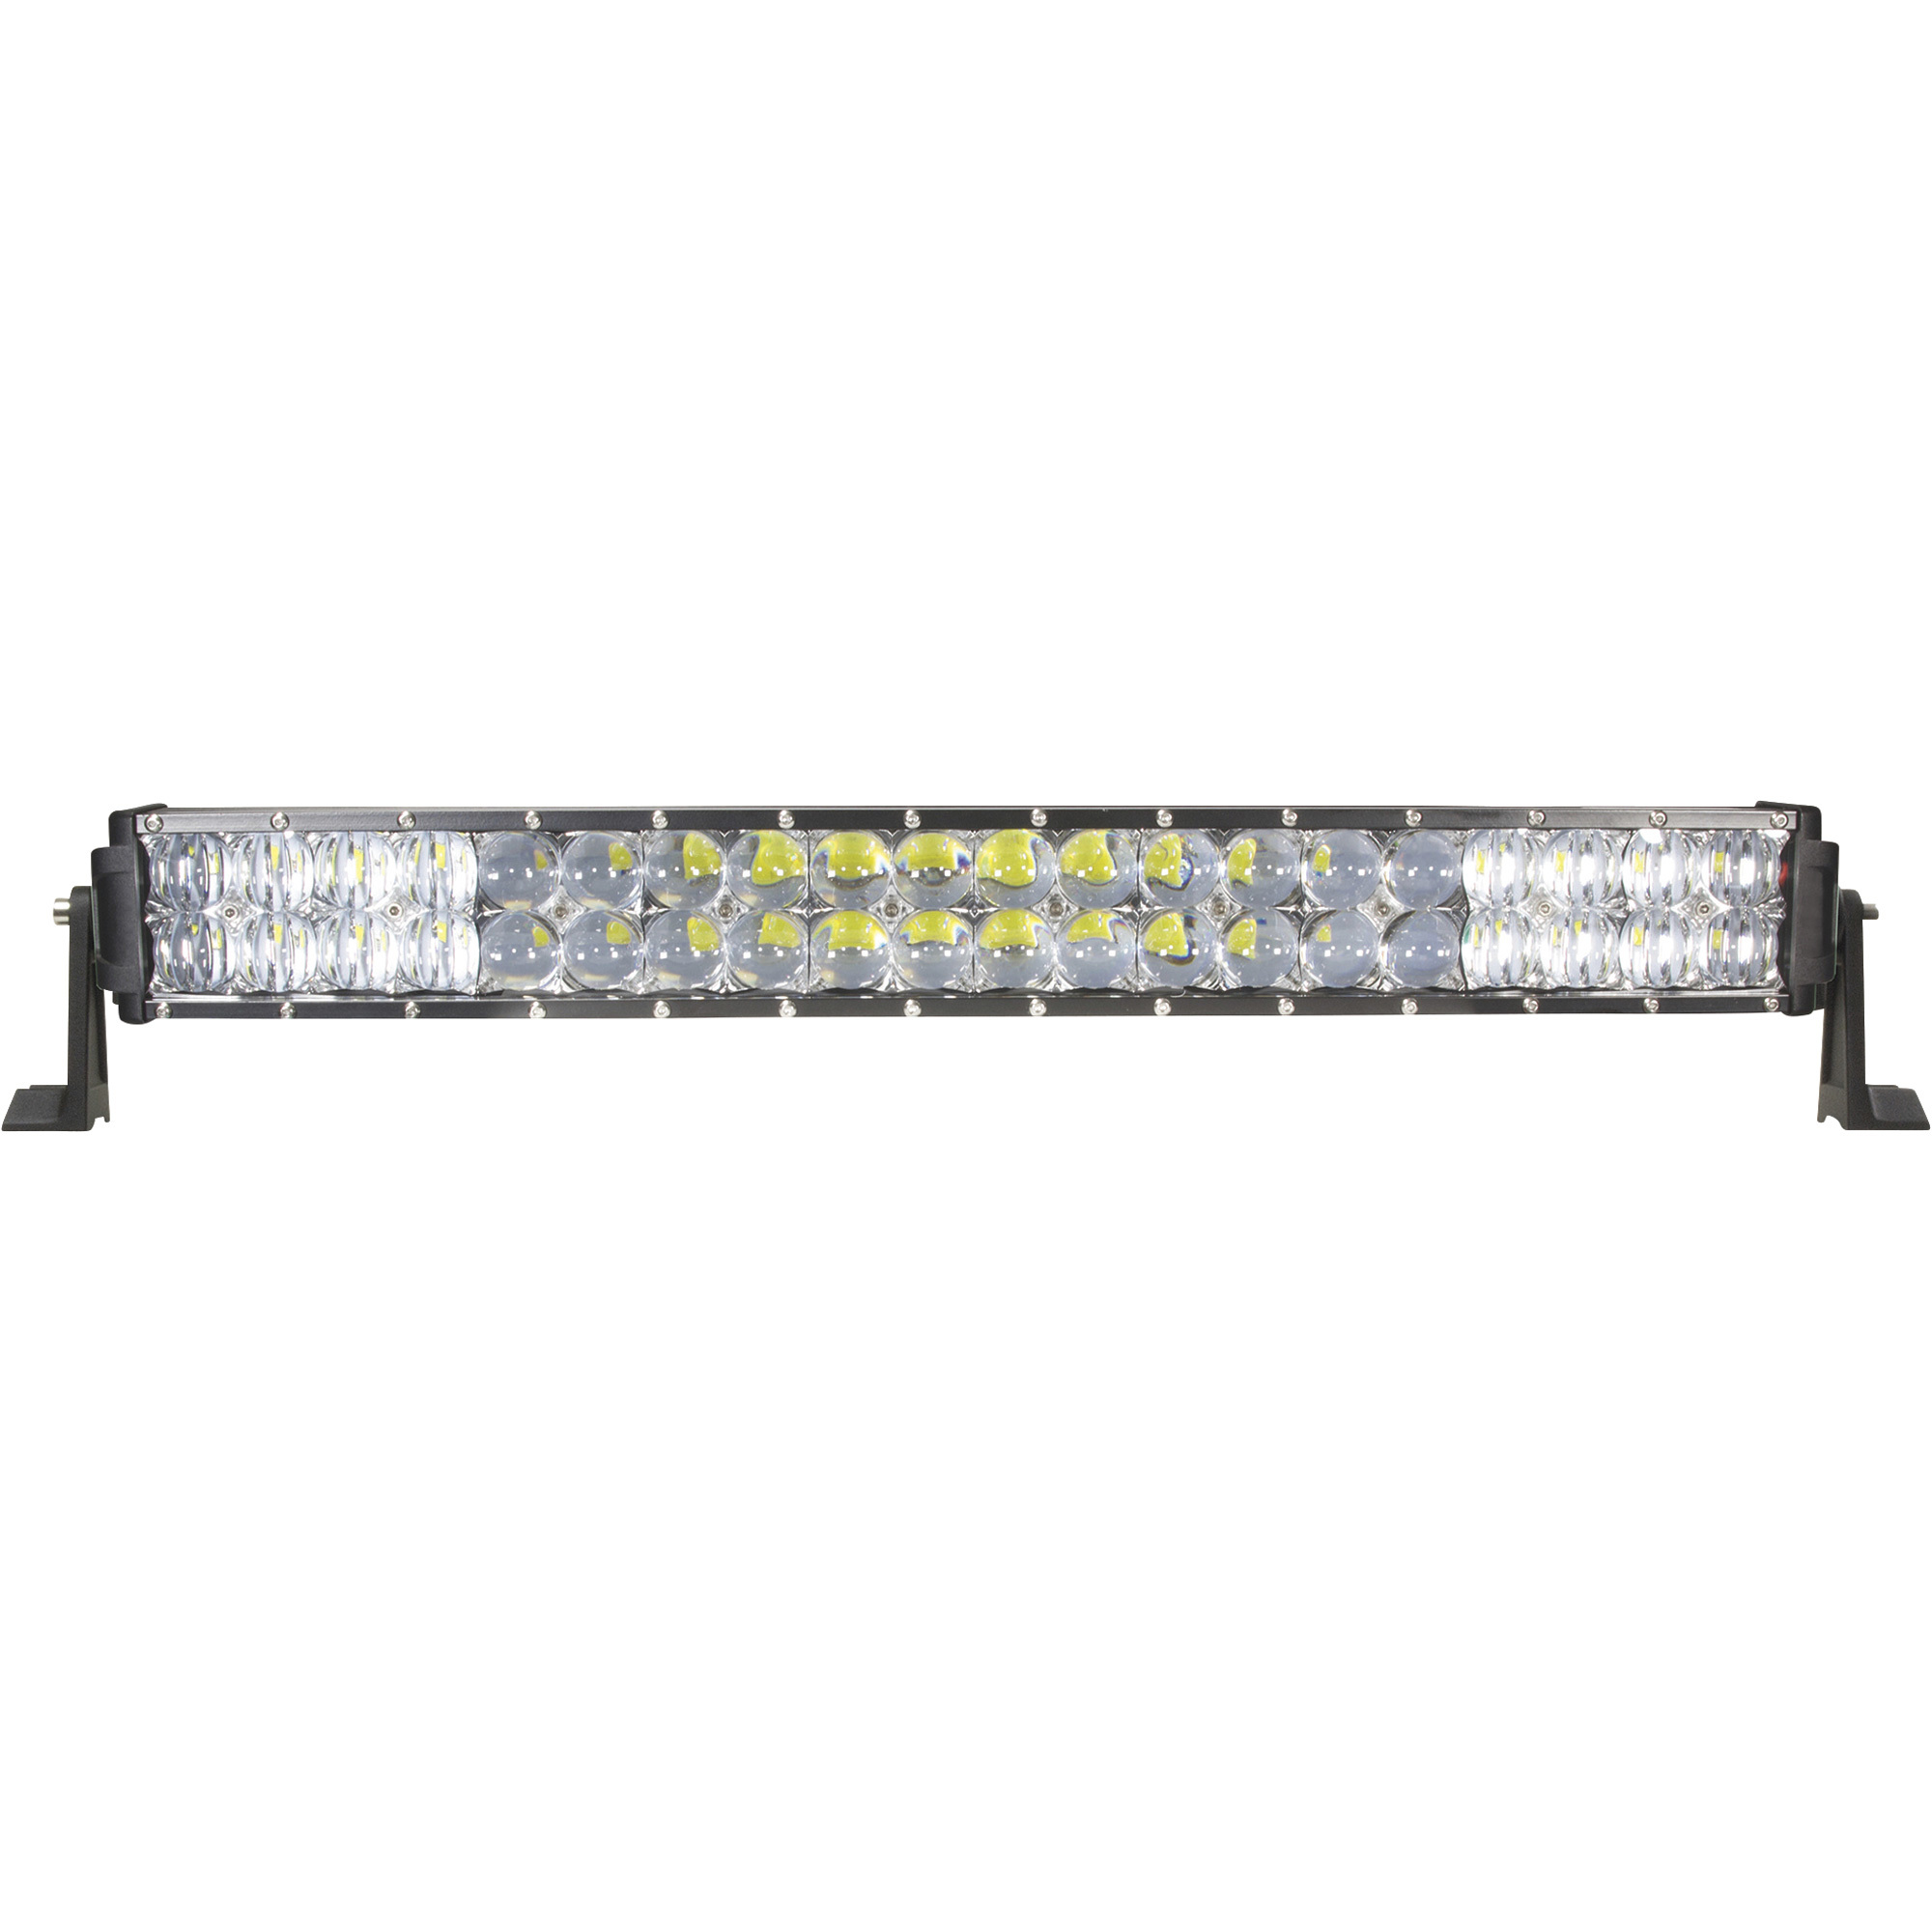 Blazer 12/24 Volt LED Double Row 3-in-1 Light Bar â 20Inch, 7920 Lumens, 40 LEDs, Model CWL520